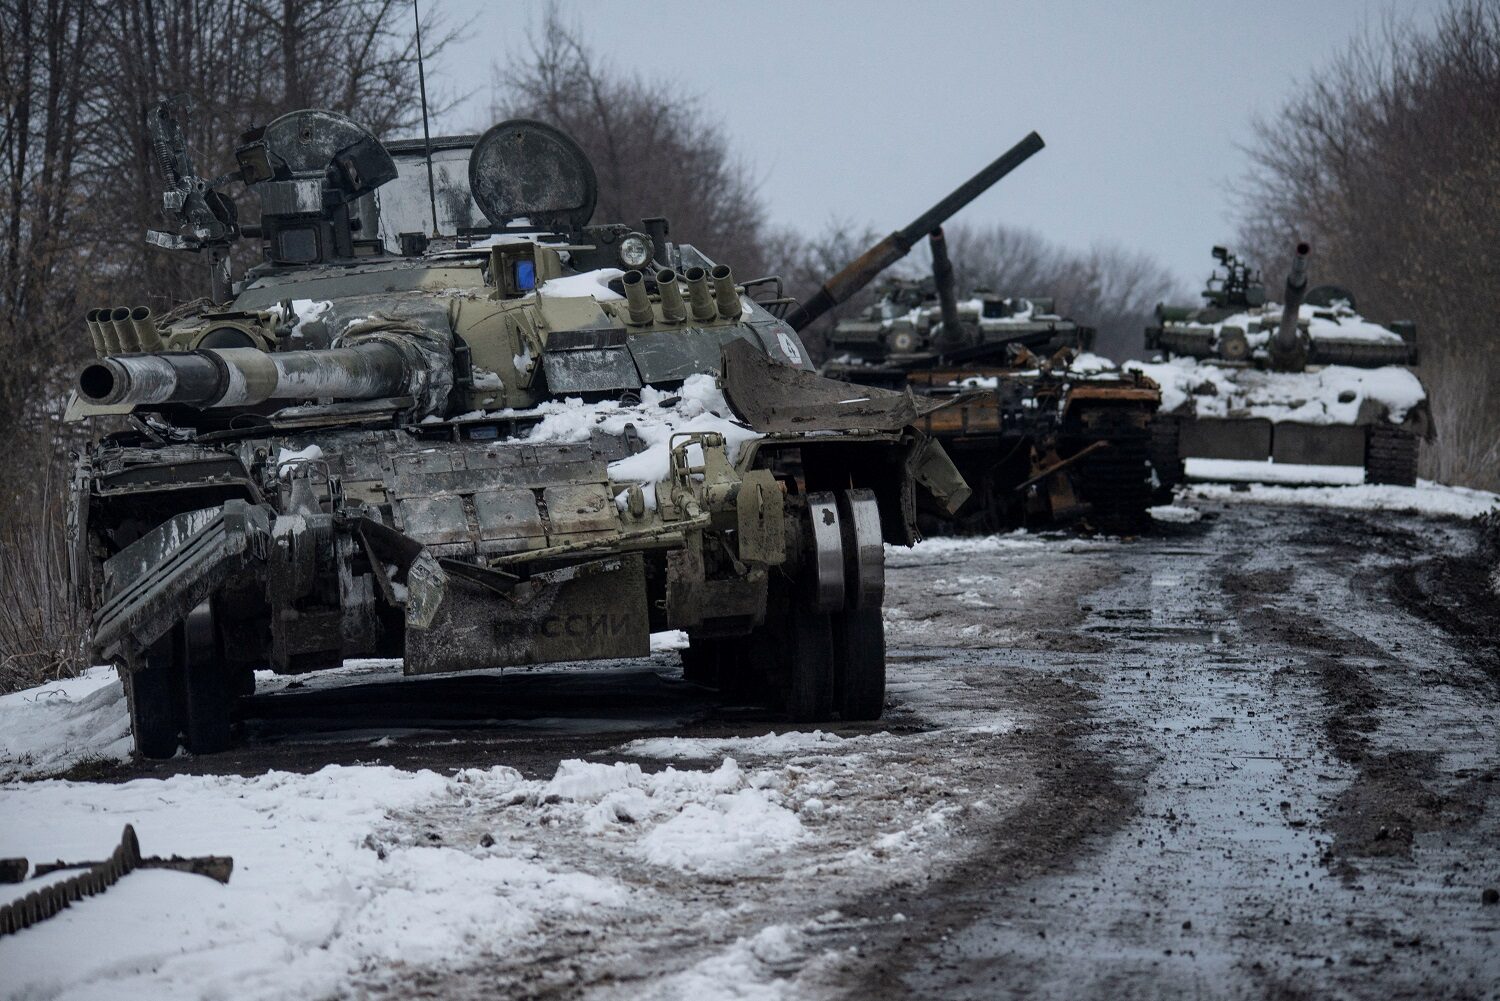 เพนตากอนประเมิน ทหารรัสเซีย 2-4 พัน ดับในยูเครน เชื่อปูตินลุยต่อแม้จะพ่ายแพ้